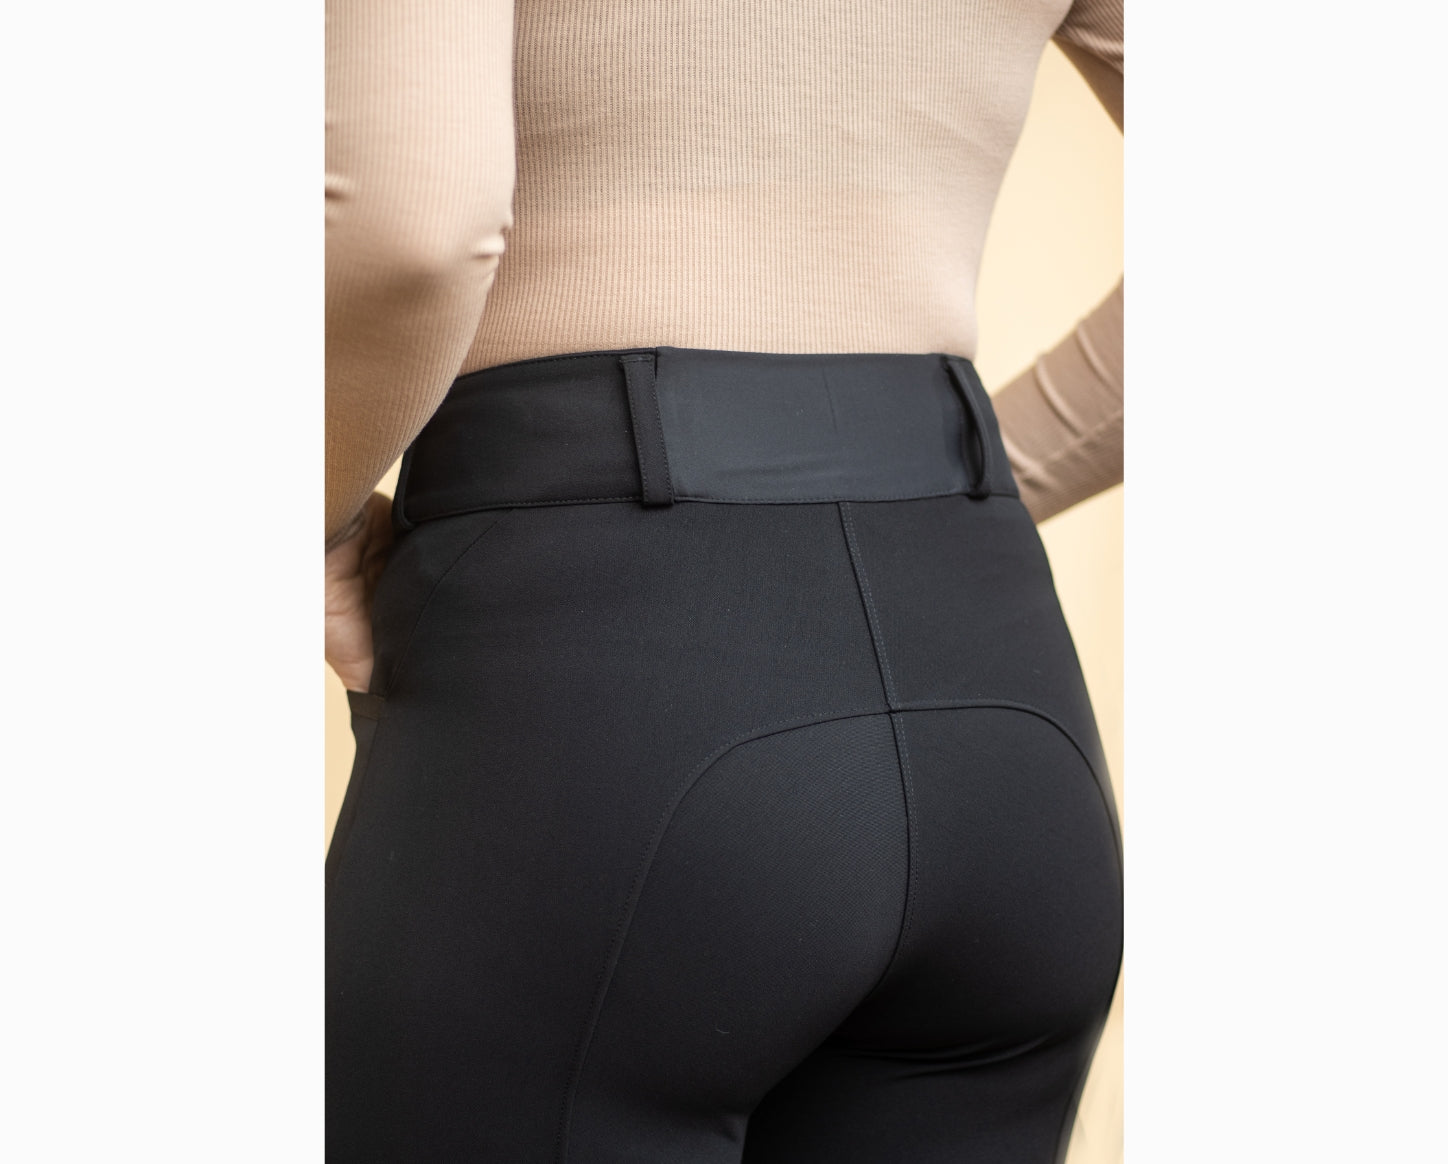 Pantalon équitation femme 560 JUMP basanes silicone bordeaux - Maroc, achat en ligne